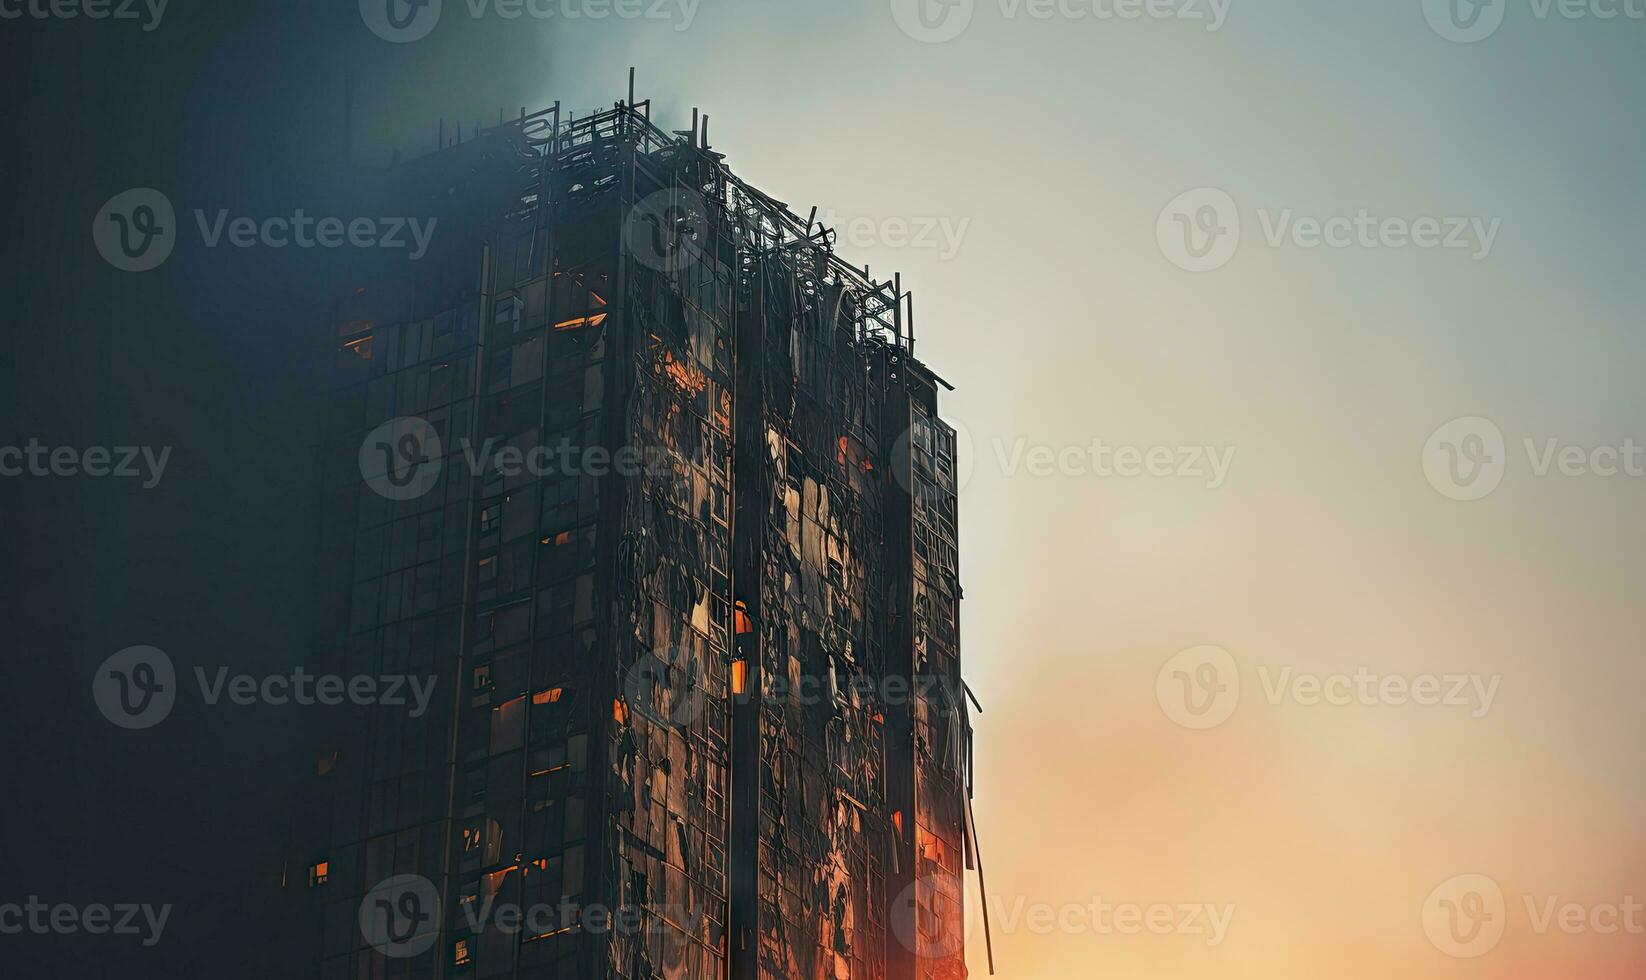 torenhoog gebouw overspoeld in een woest vuur, met rook golvend. ai generatief. foto